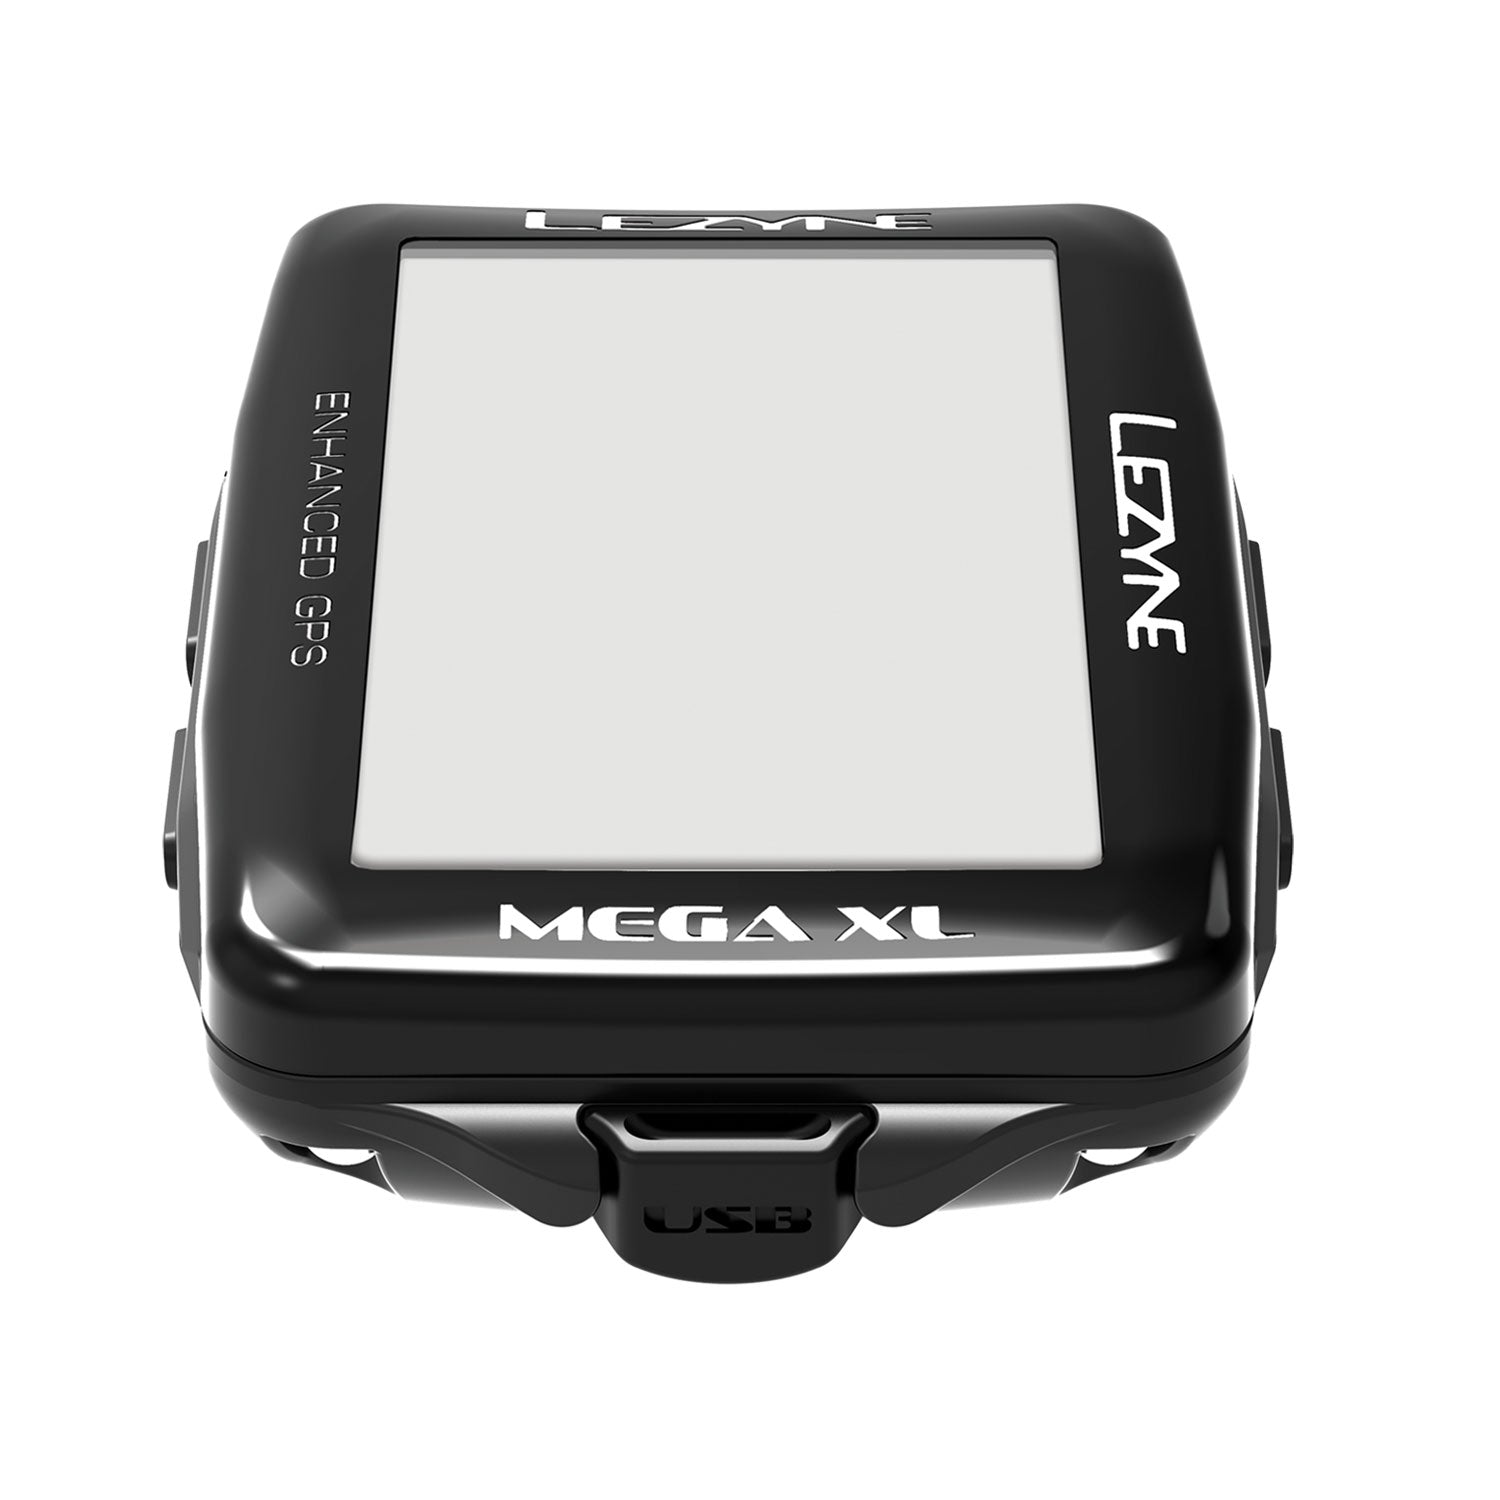 MEGA XL GPS